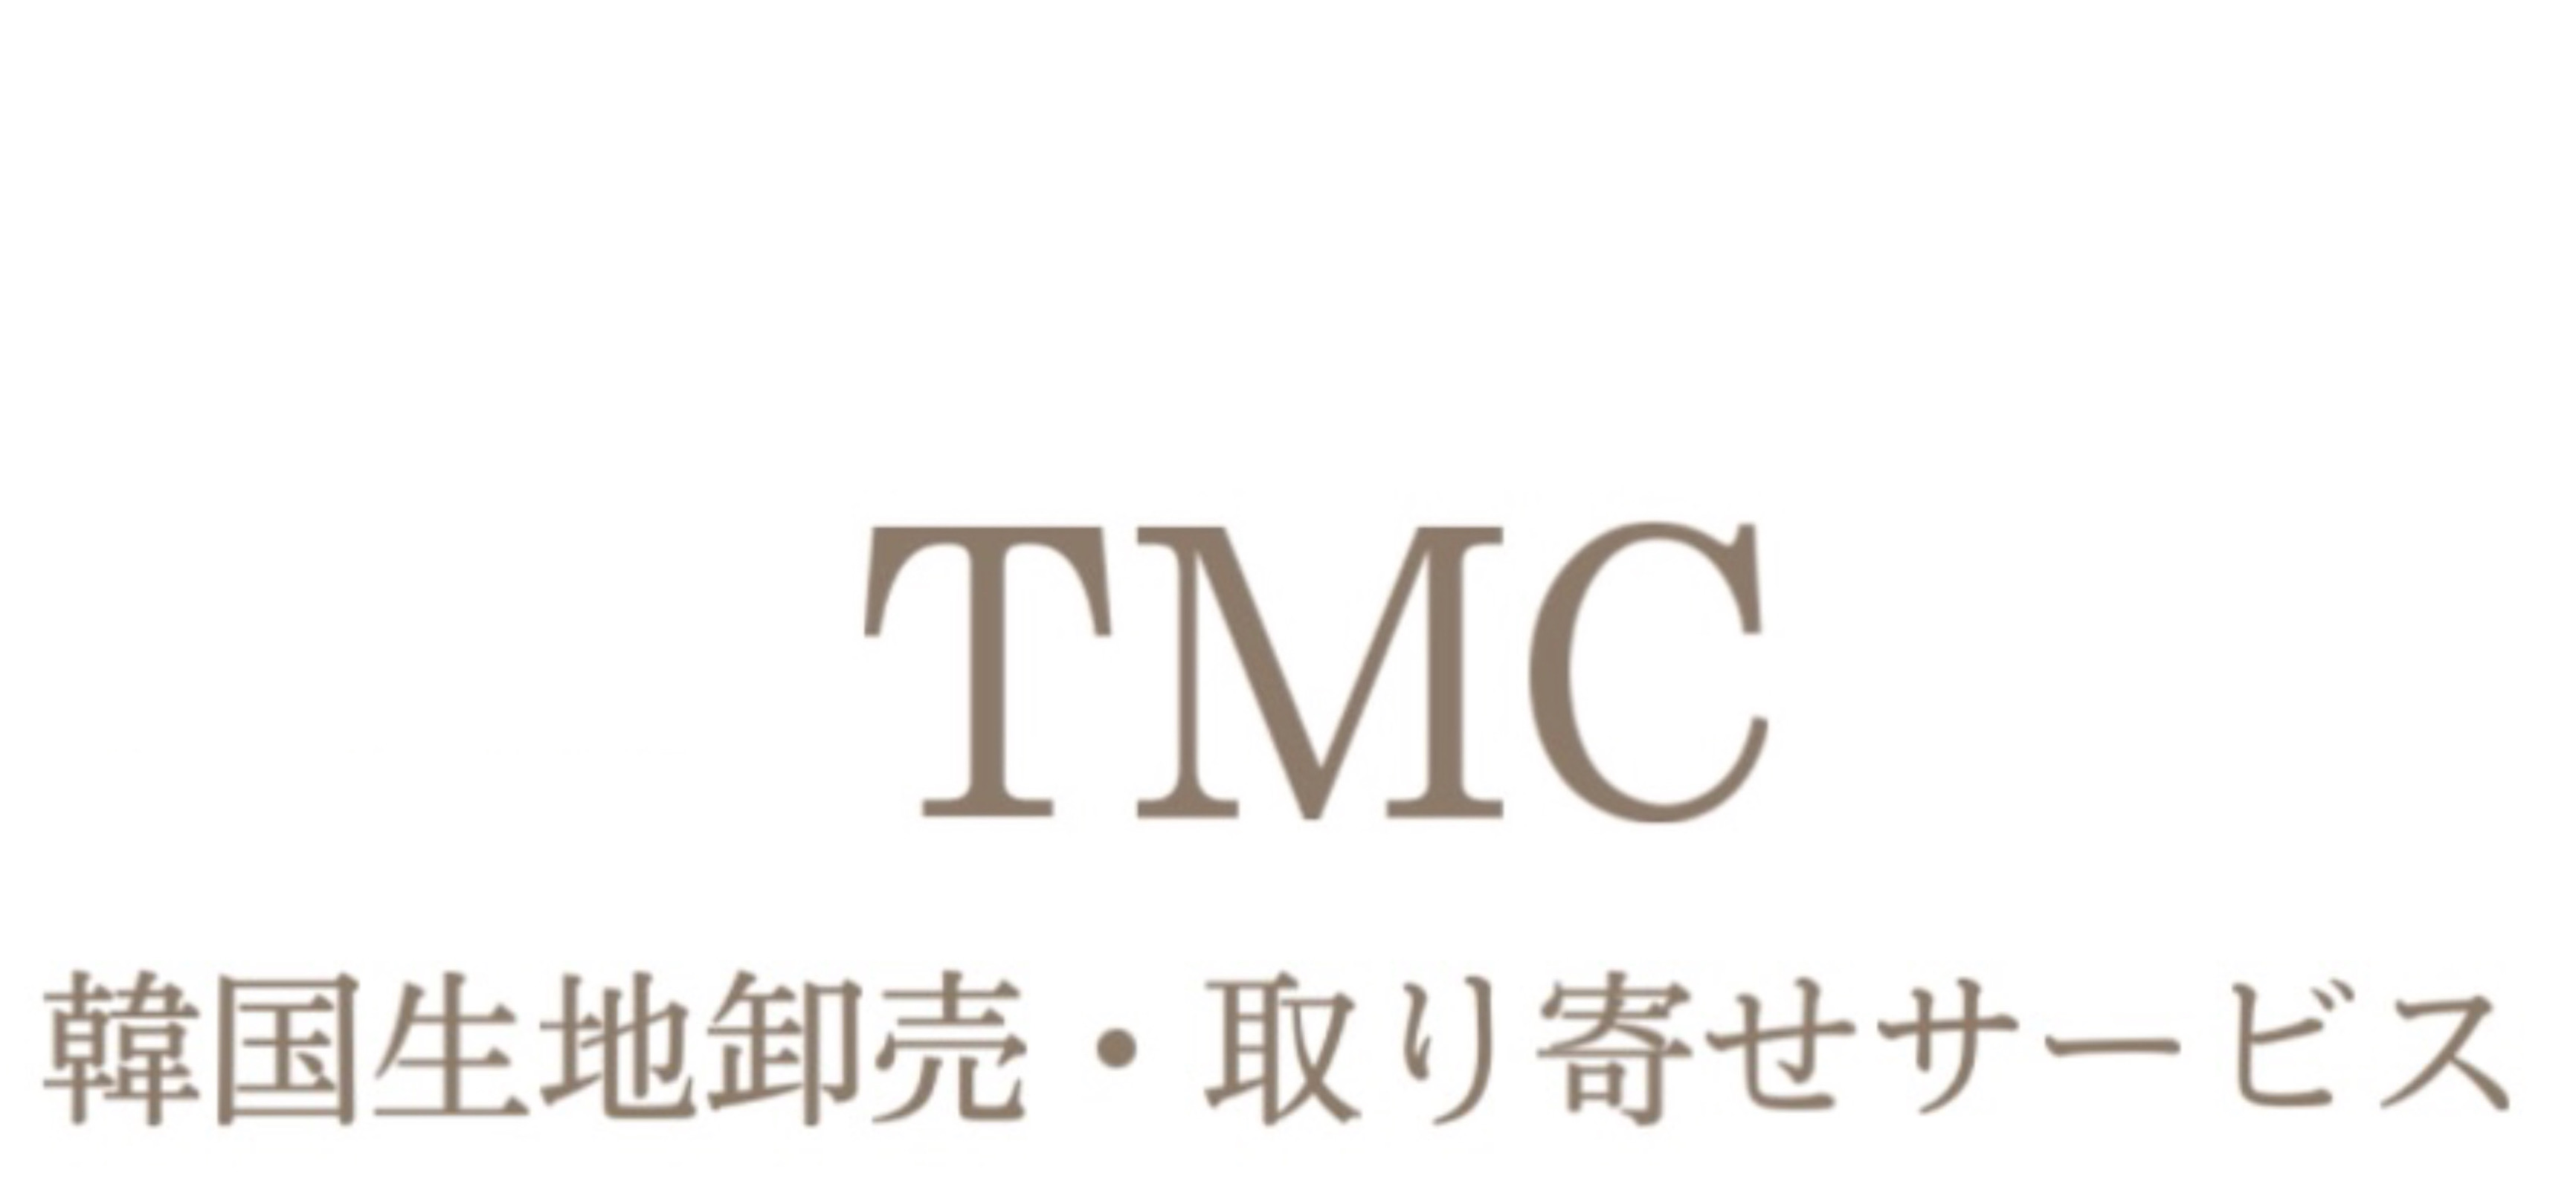 TMC 韓国生地取り寄せサービス